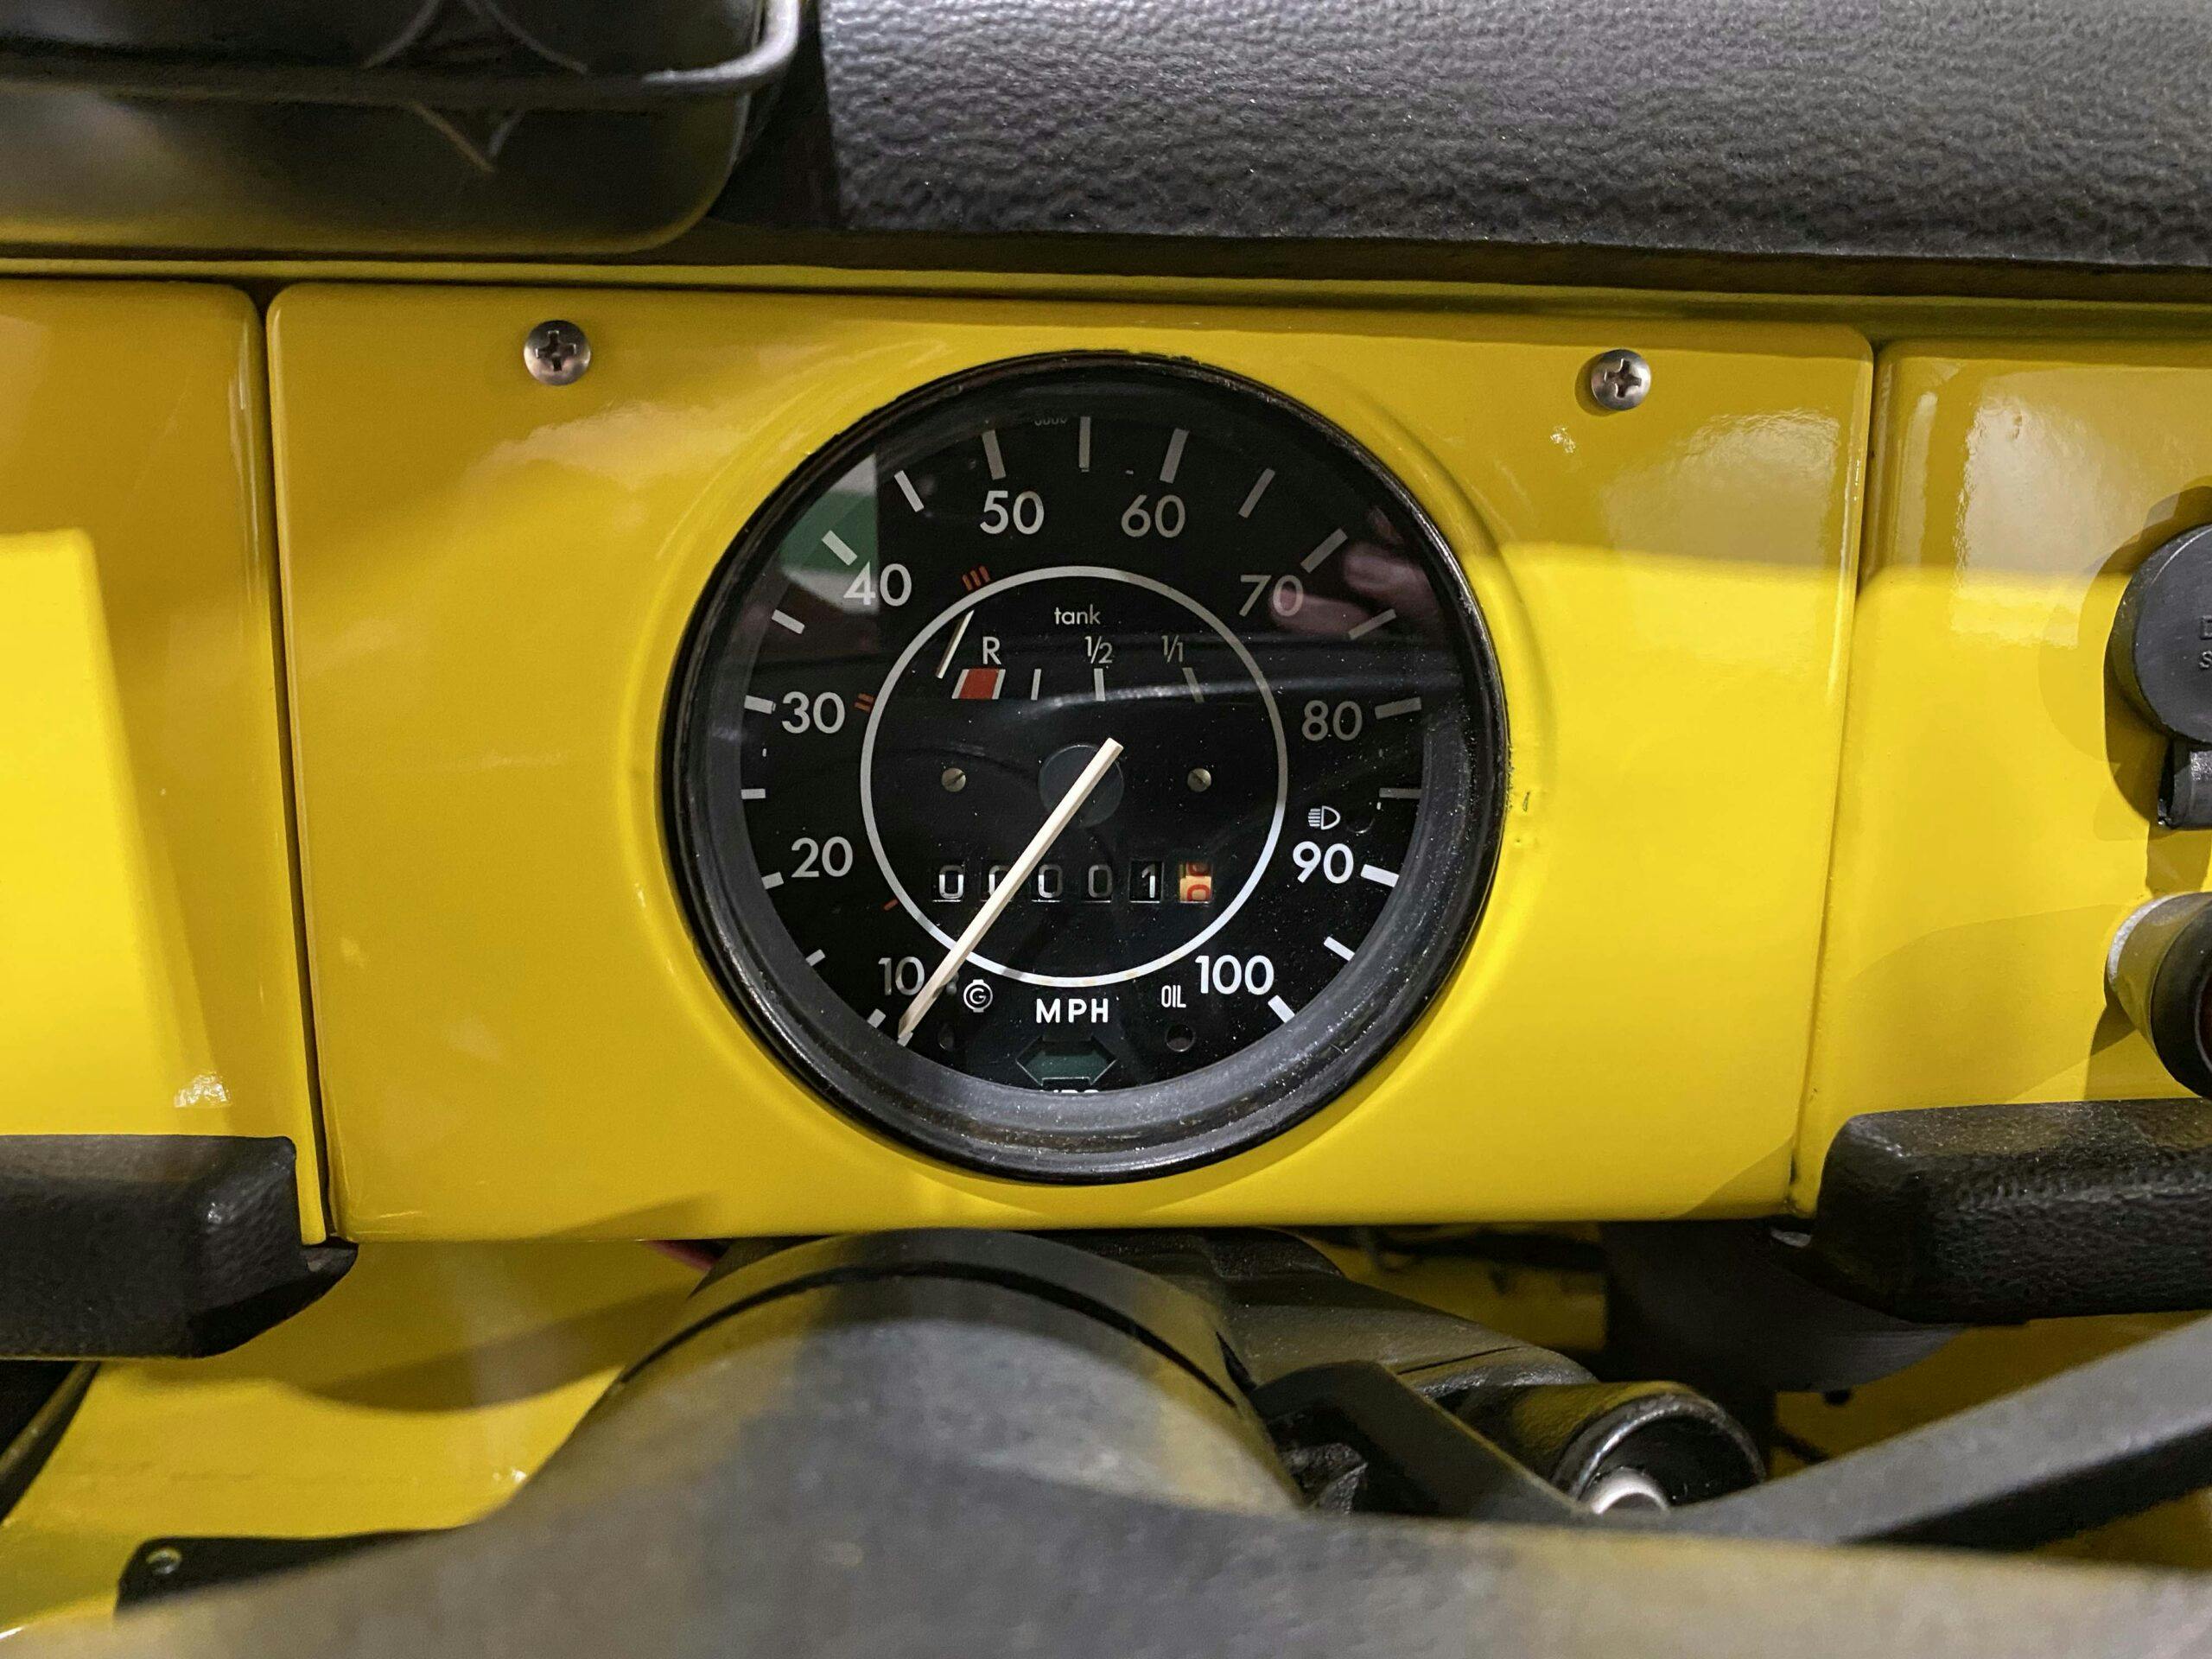 1974 Volkswagen Type 181 Thing interior speedometer gauge